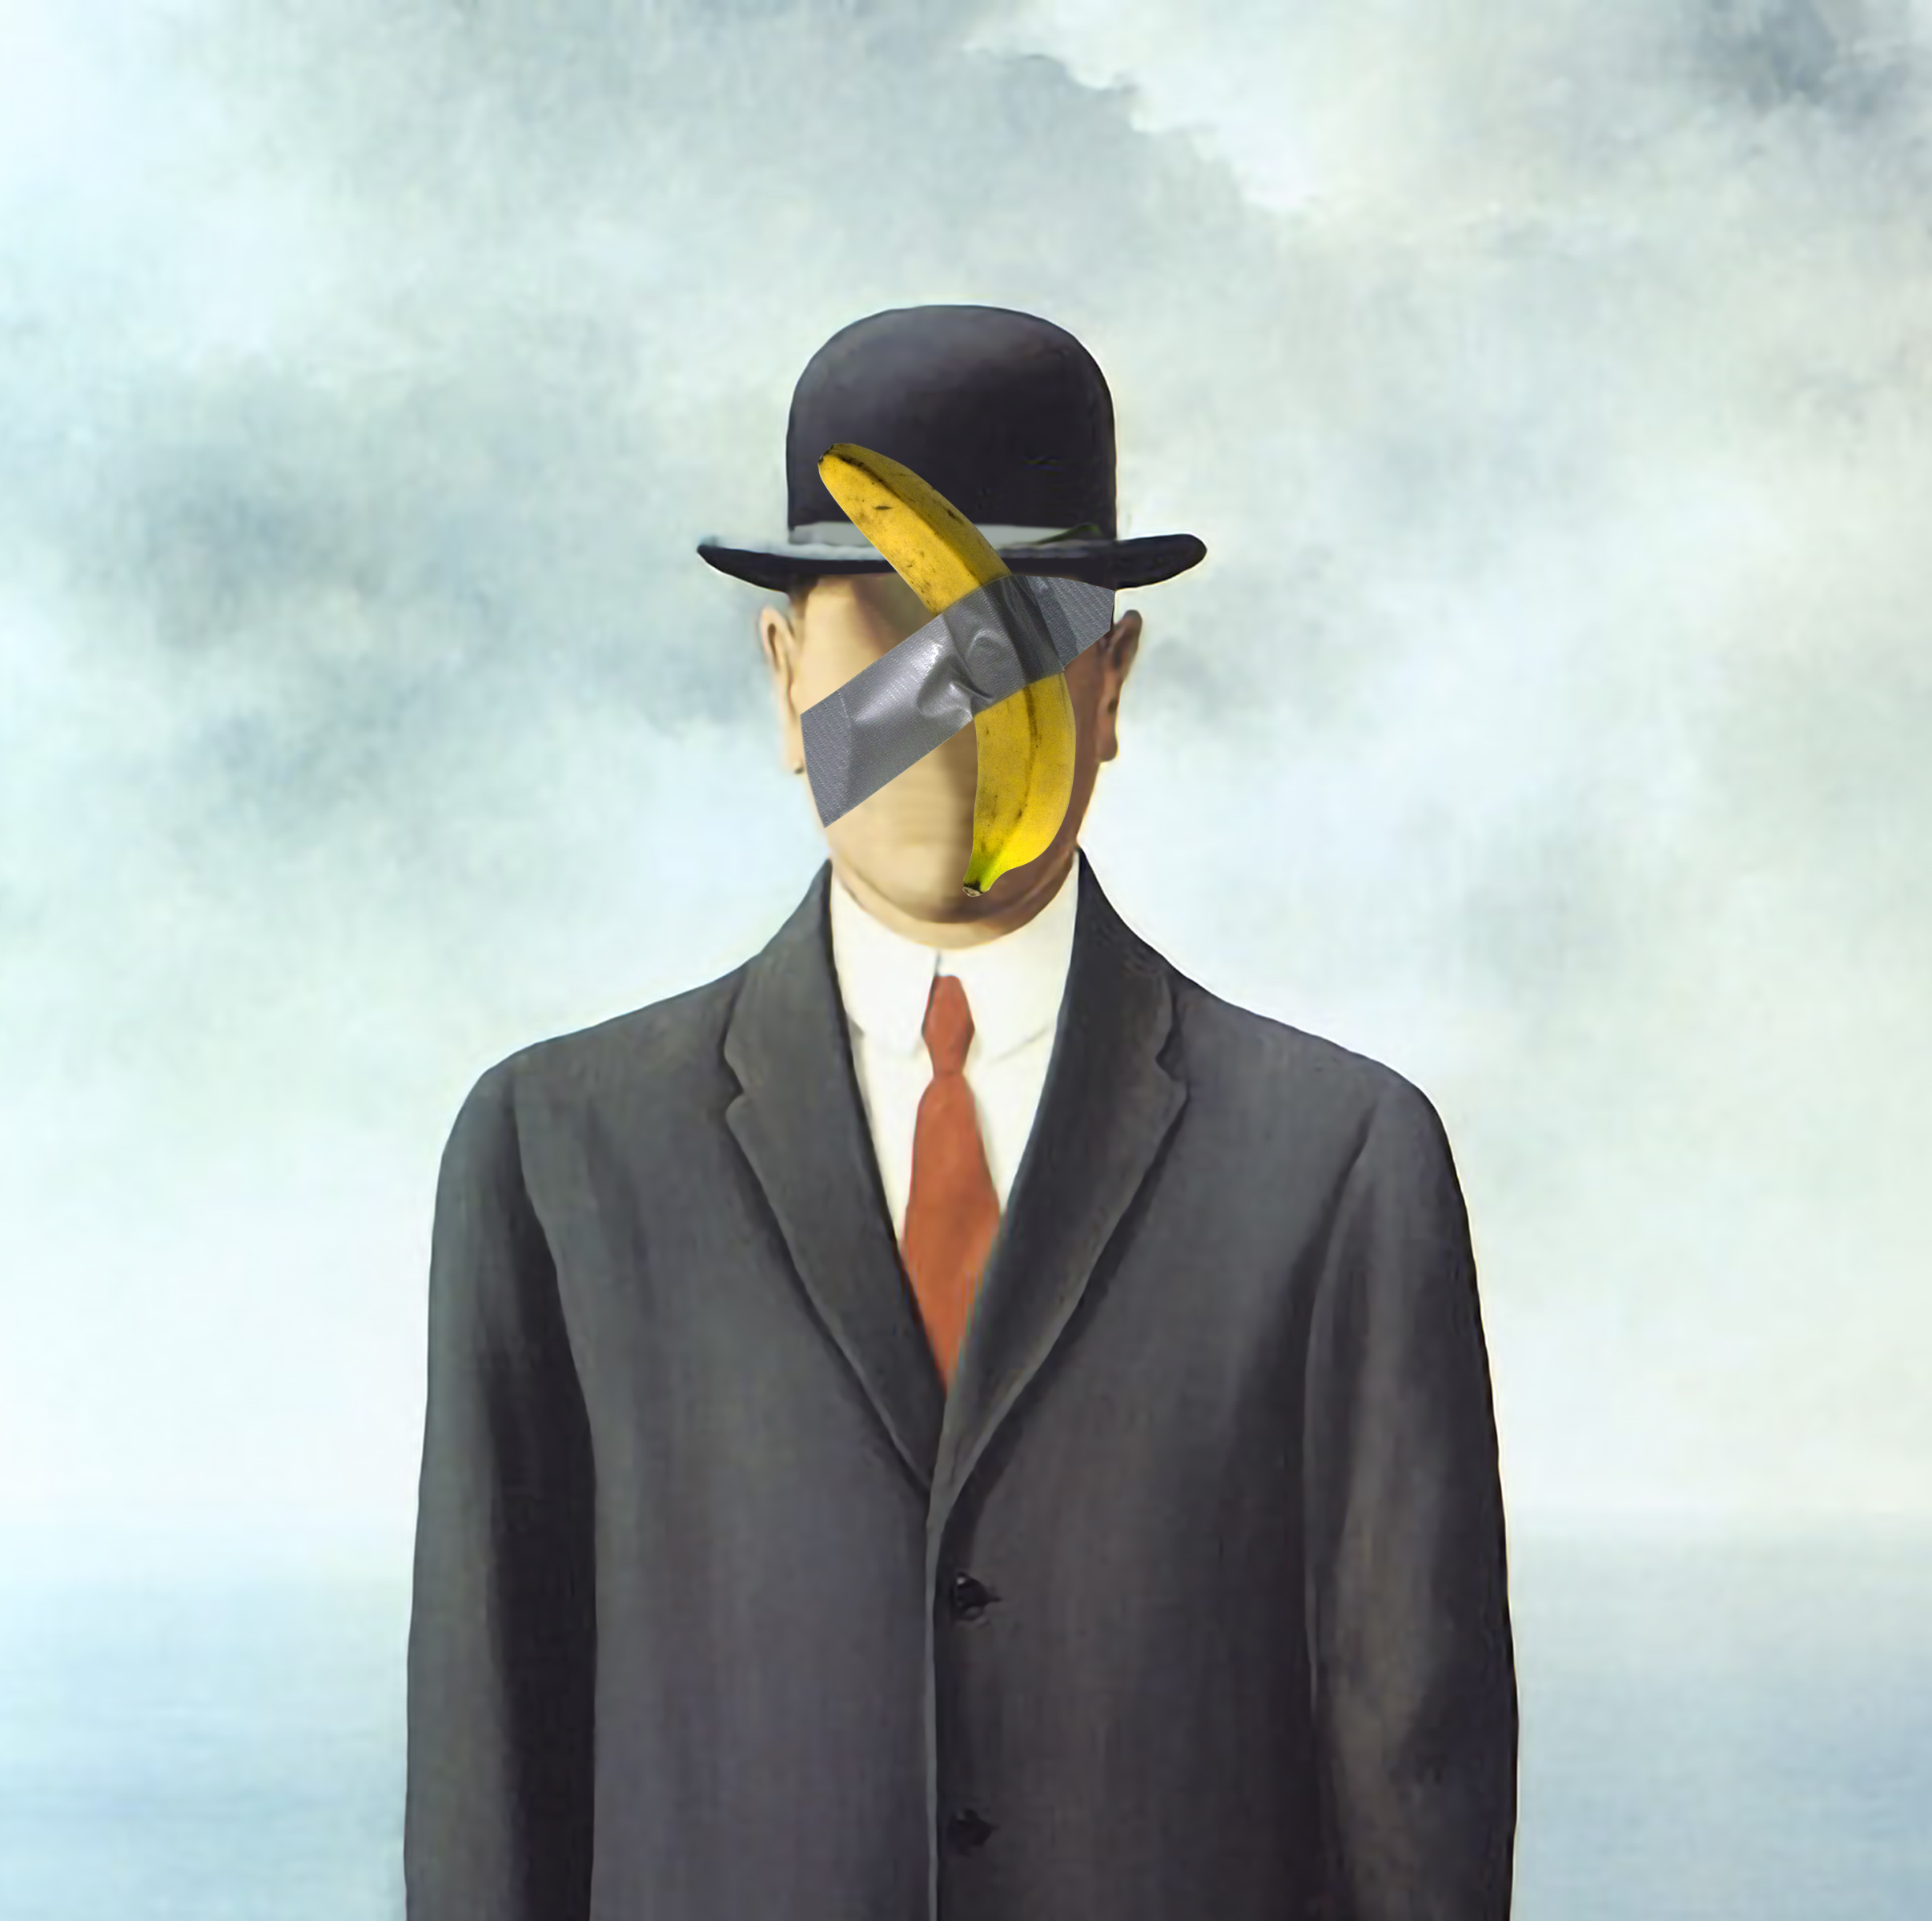 Cattelan's Banana Art (Bananart) #009 Magritte